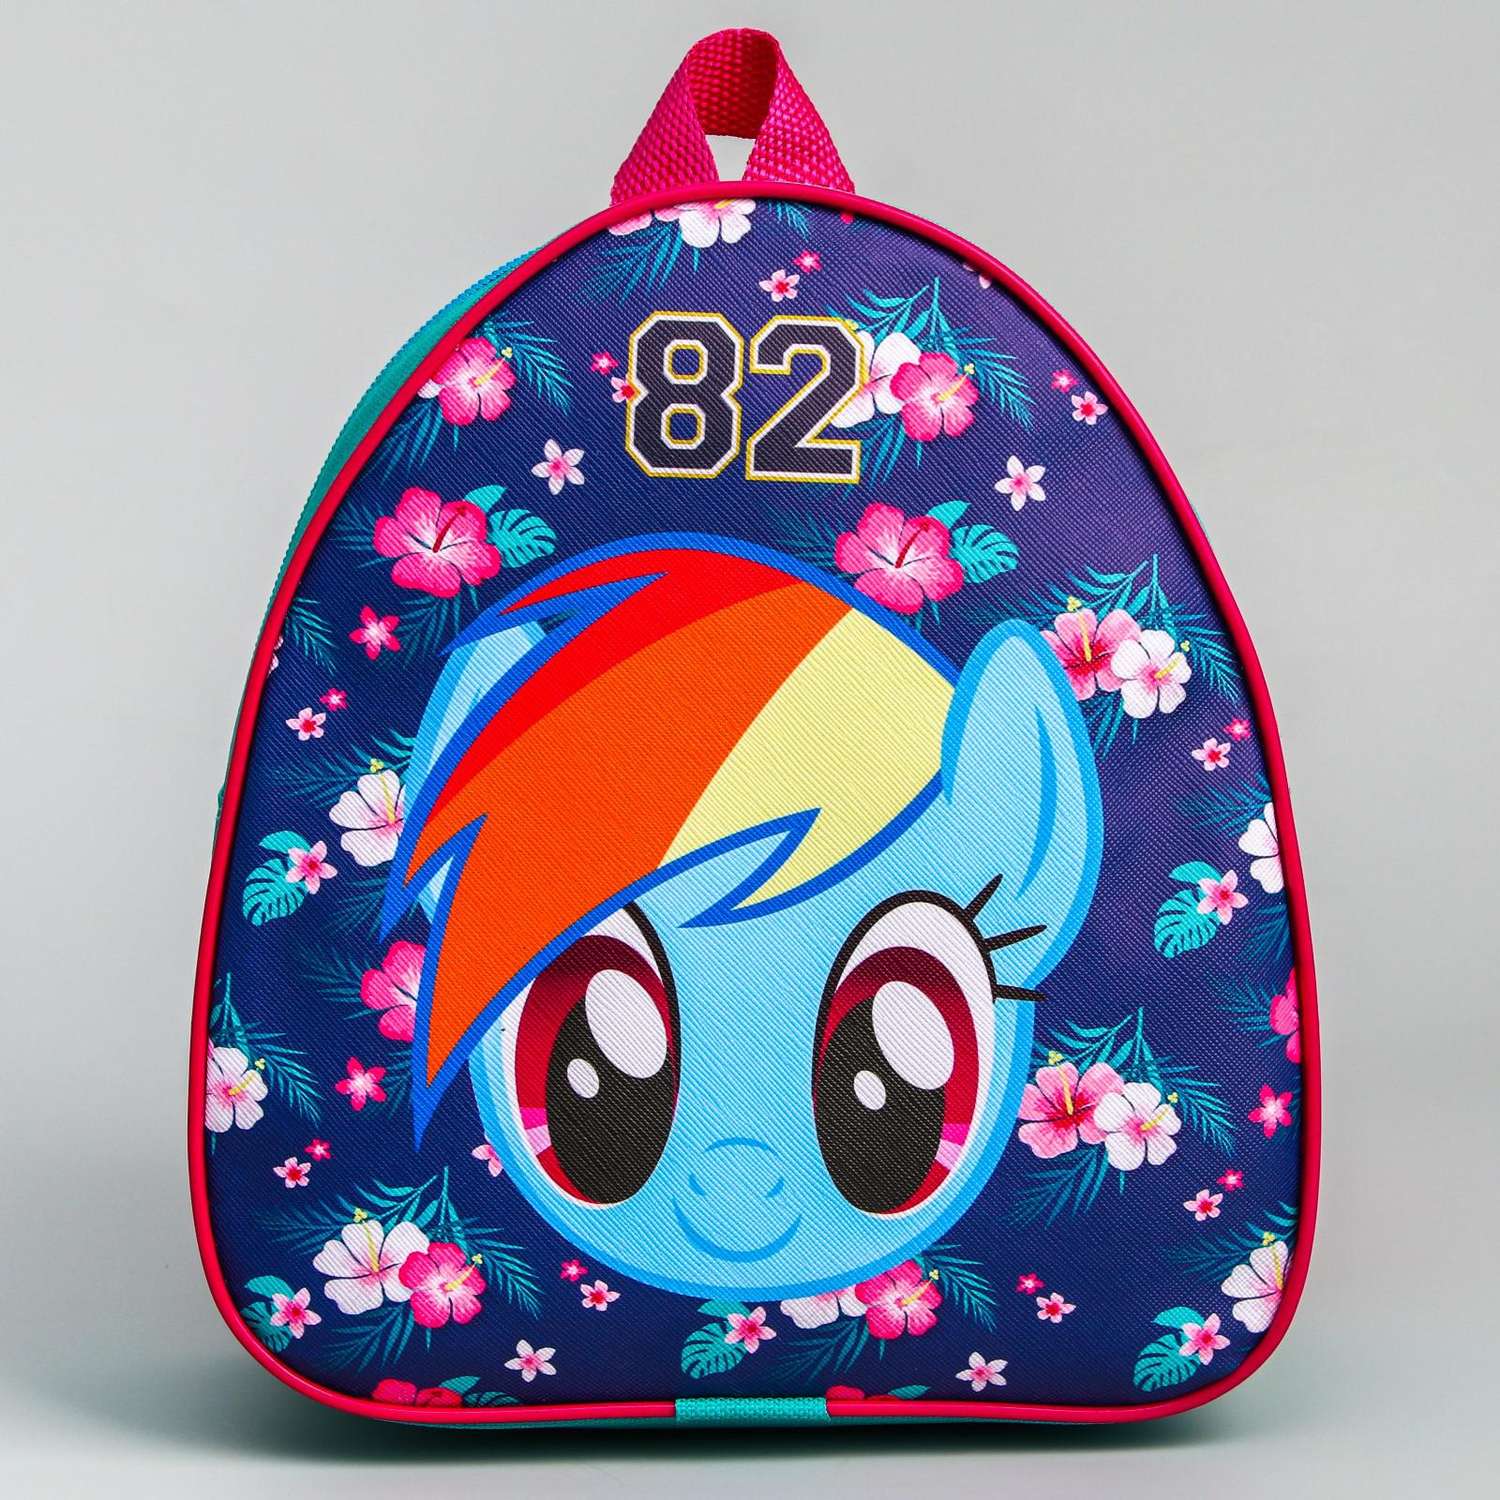 Рюкзак Hasbro детский «82» My Little Pony - фото 2